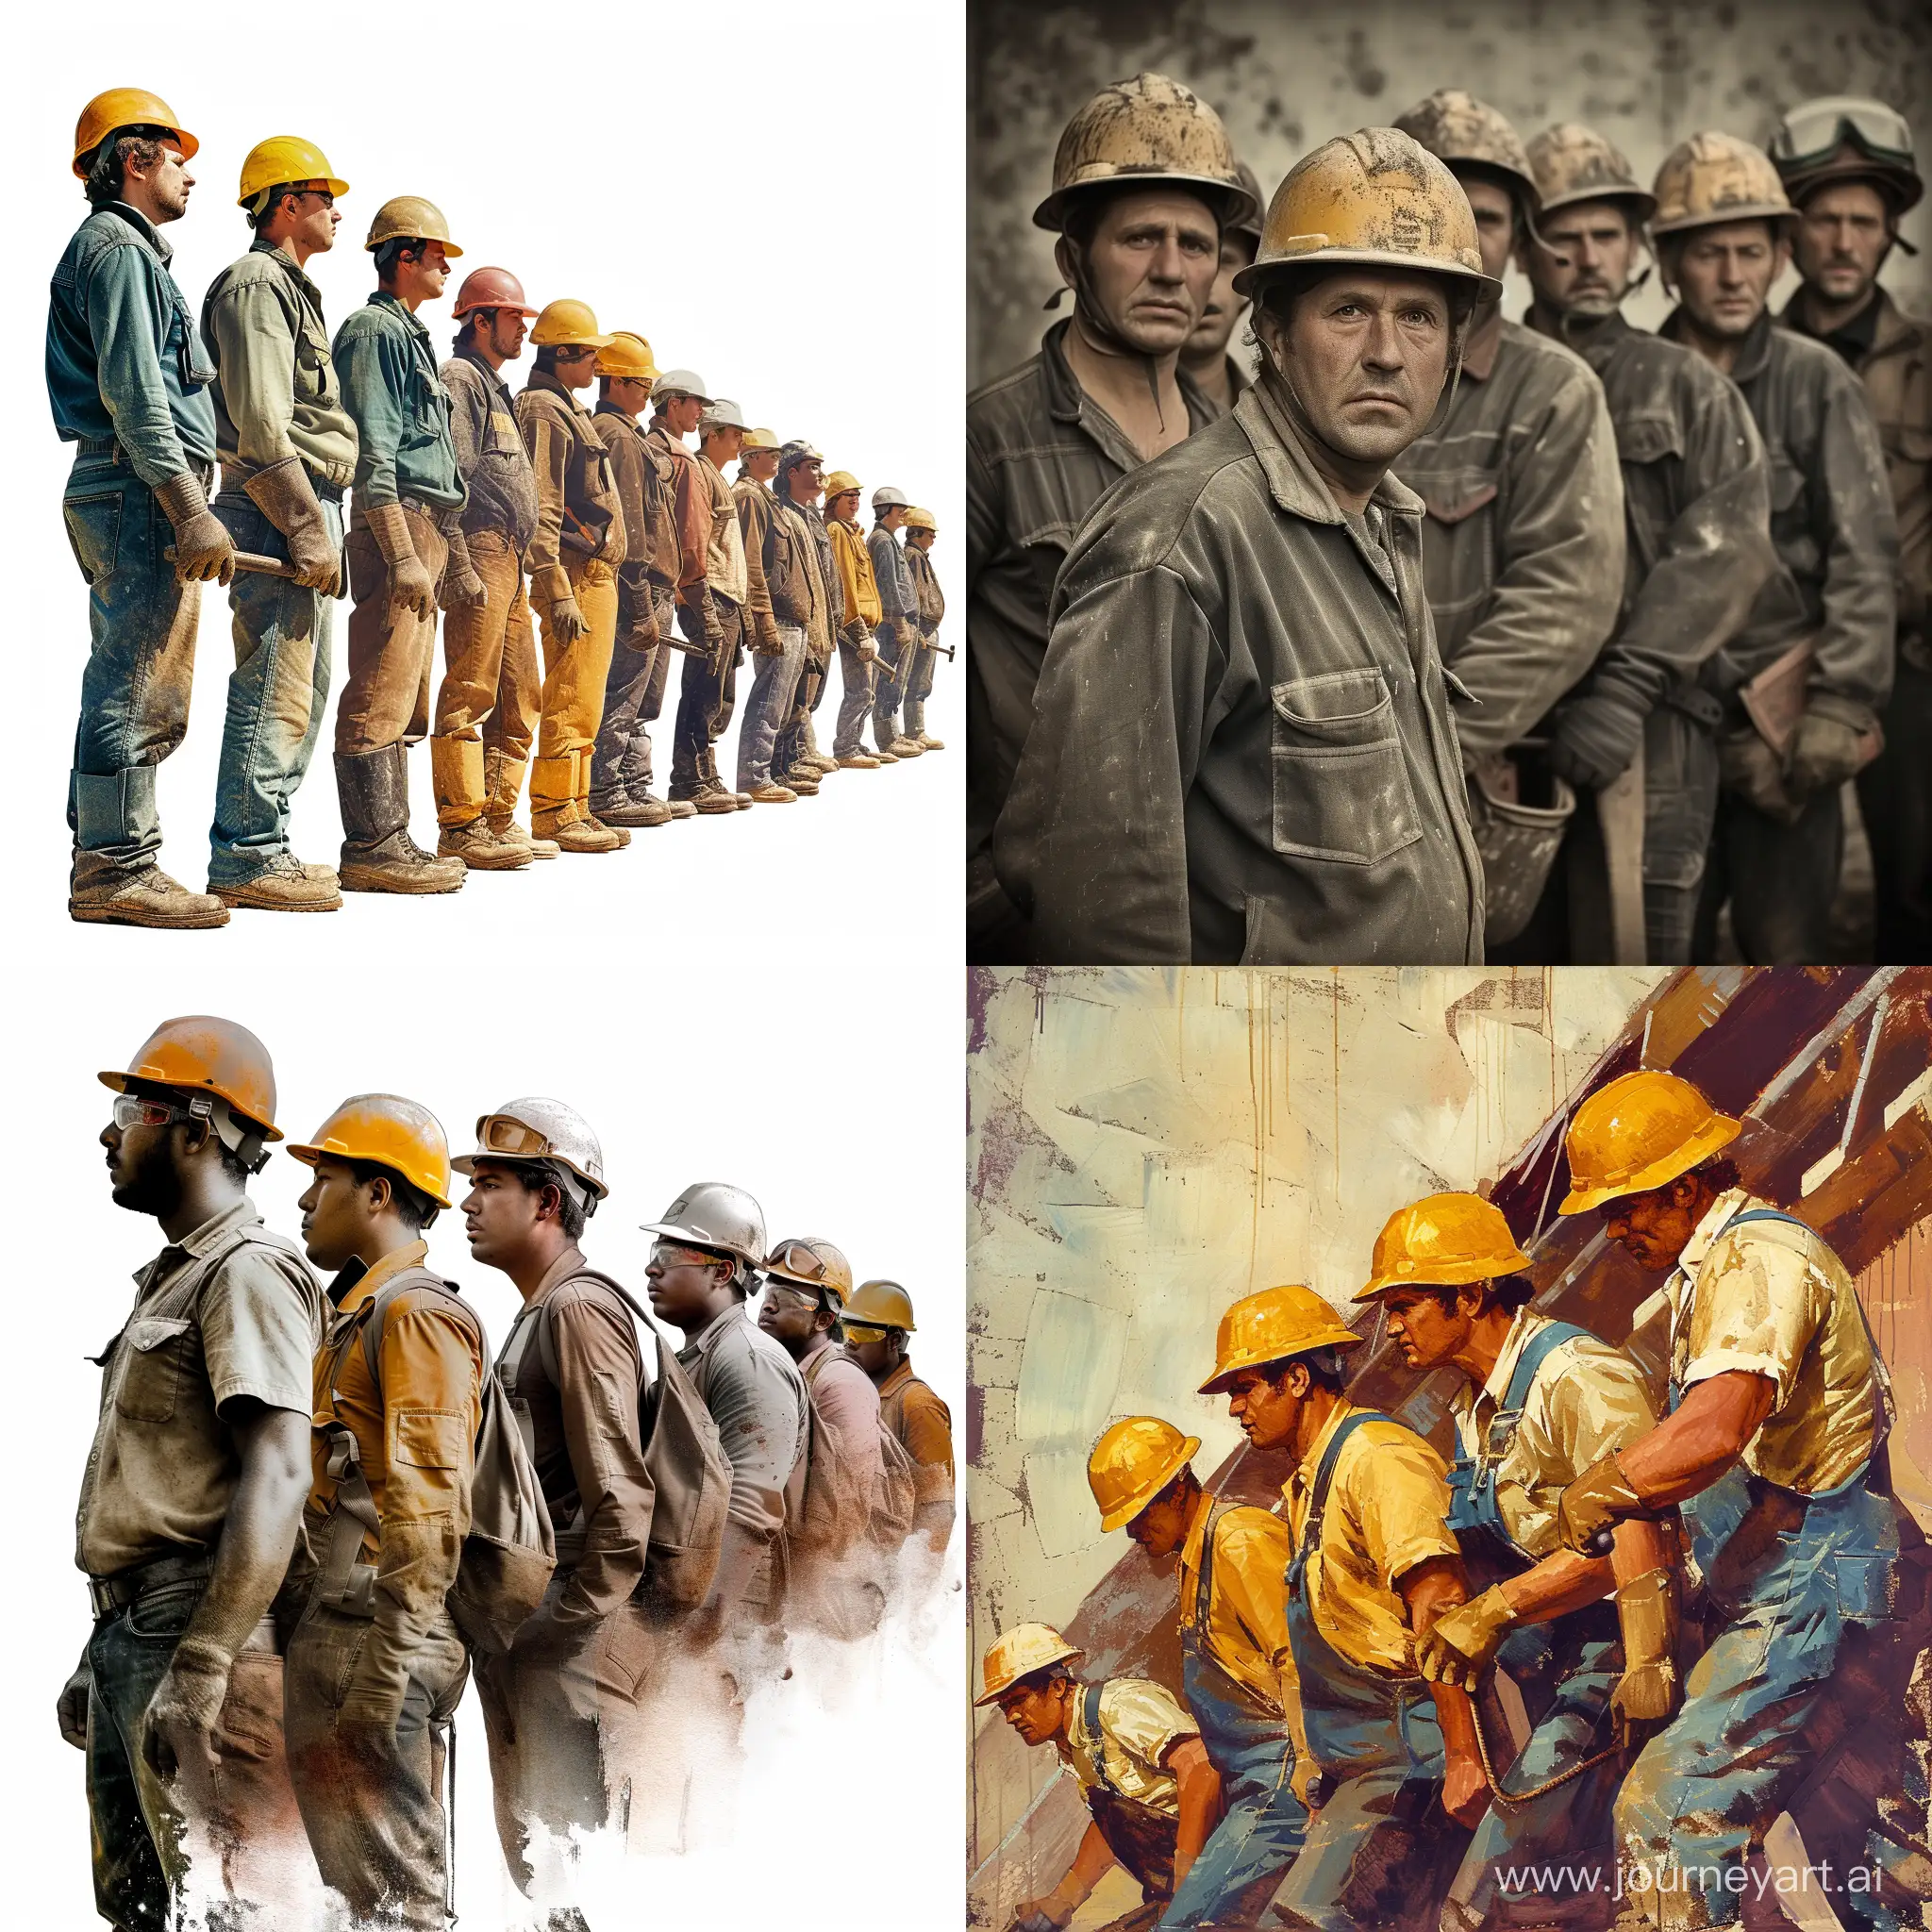 Hardworking-Laborers-in-Helmets